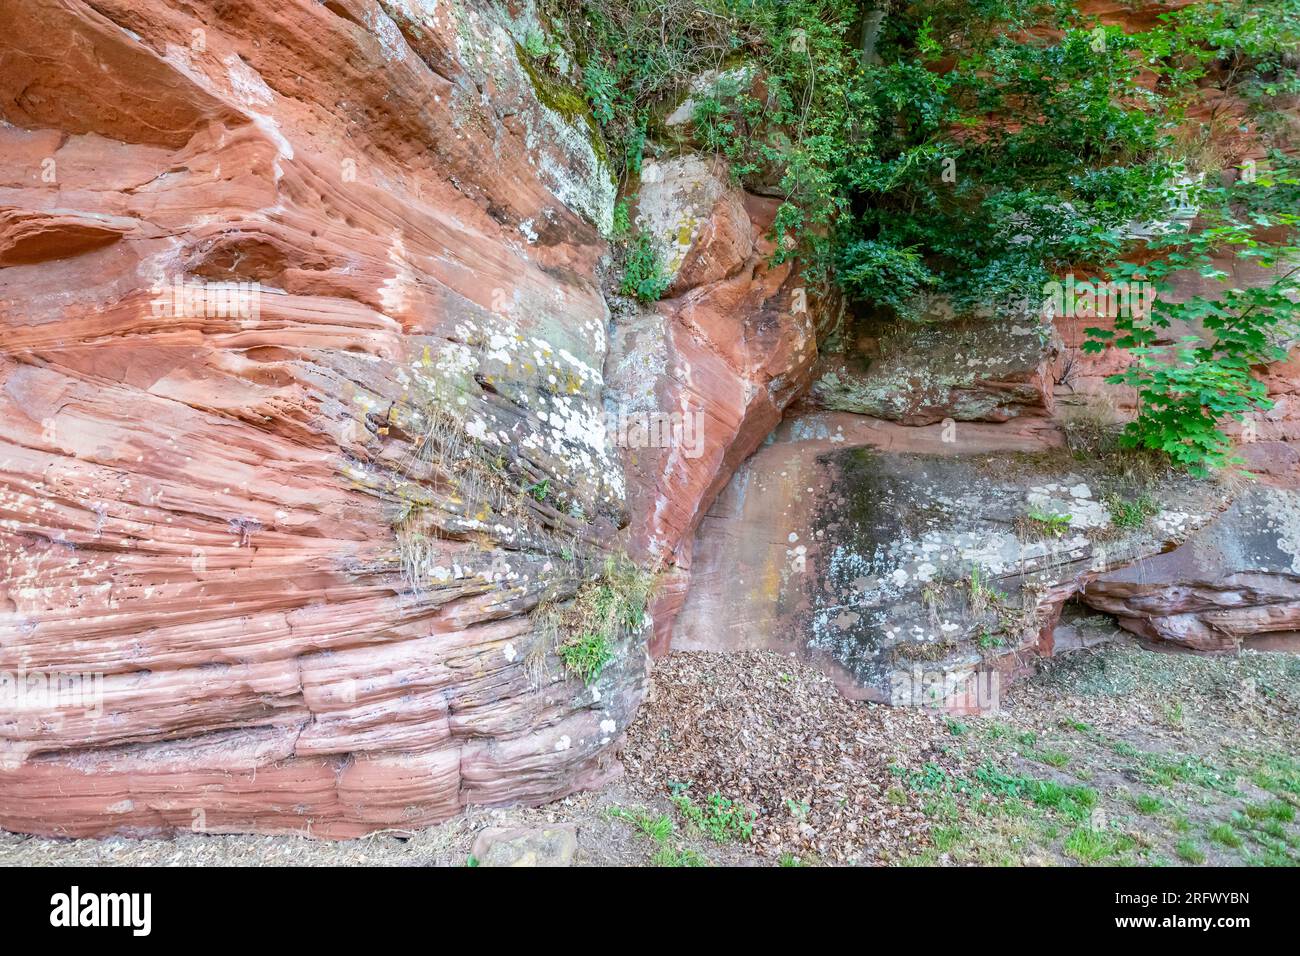 Parete di un pendio roccioso di arenaria rossa, struttura irregolare, muffa, macchie bianche ed erosioni lineari causate dal passaggio del tempo, piante verdi tra le rocce Foto Stock